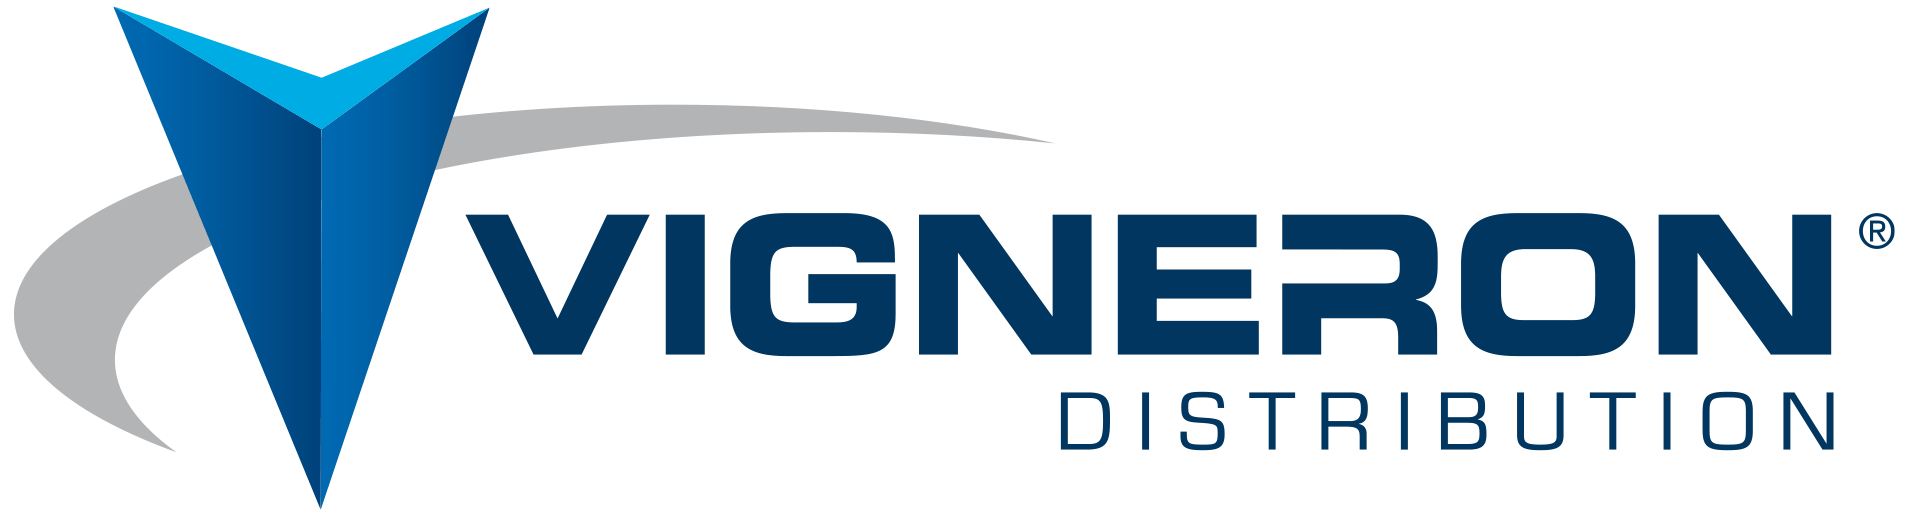 logo VIGNERON Distribution